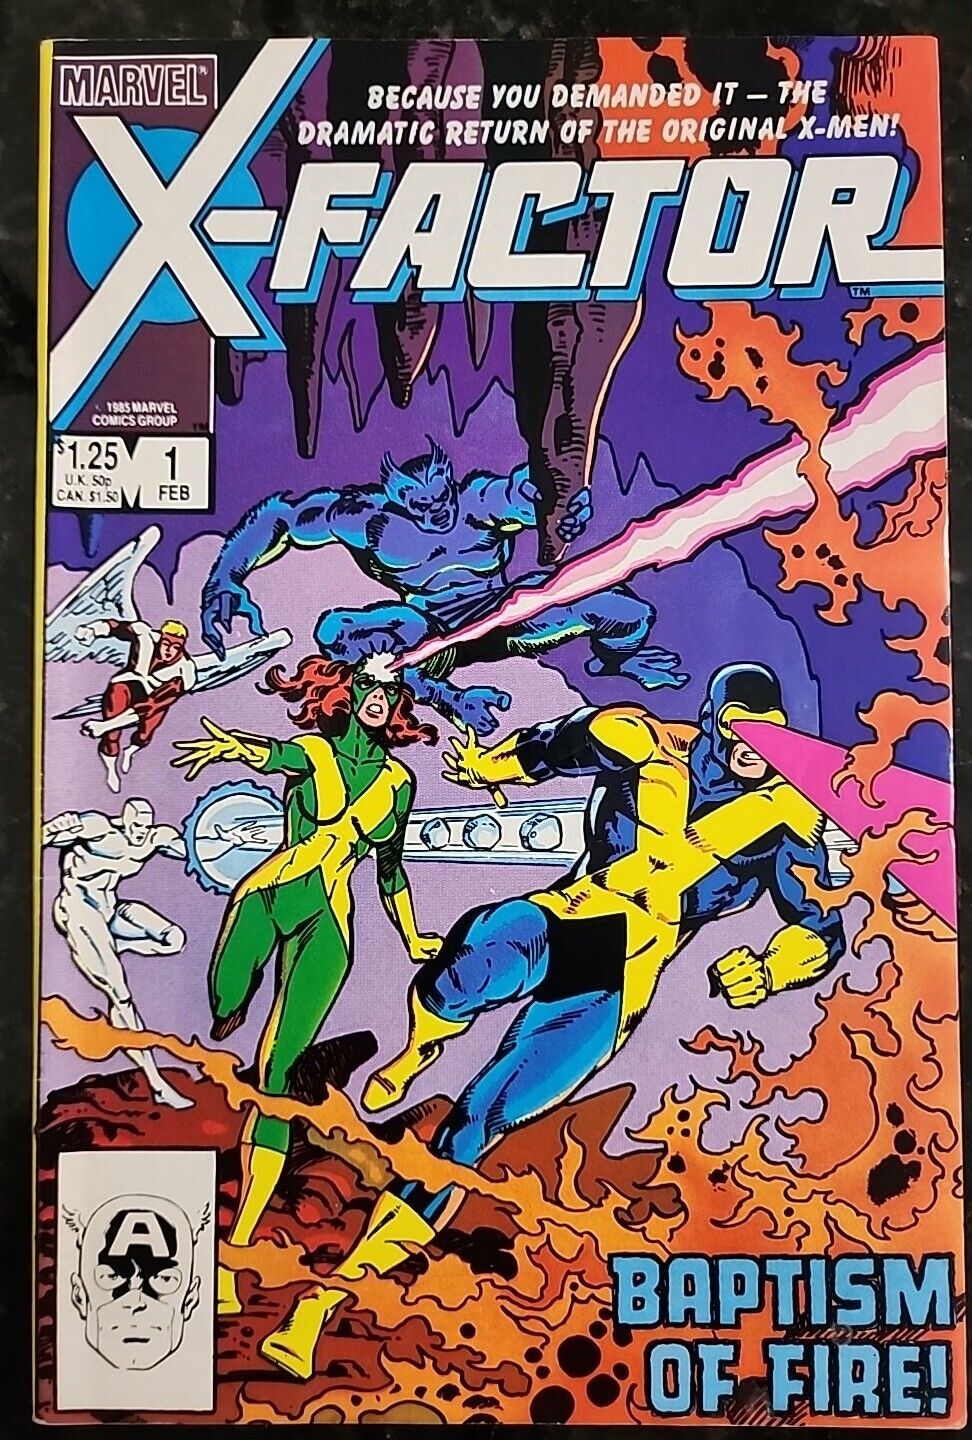 X-Factor #1 #2 #4 #5 (Marvel Comics, 1986) PLUS BONUS FREE COMIC